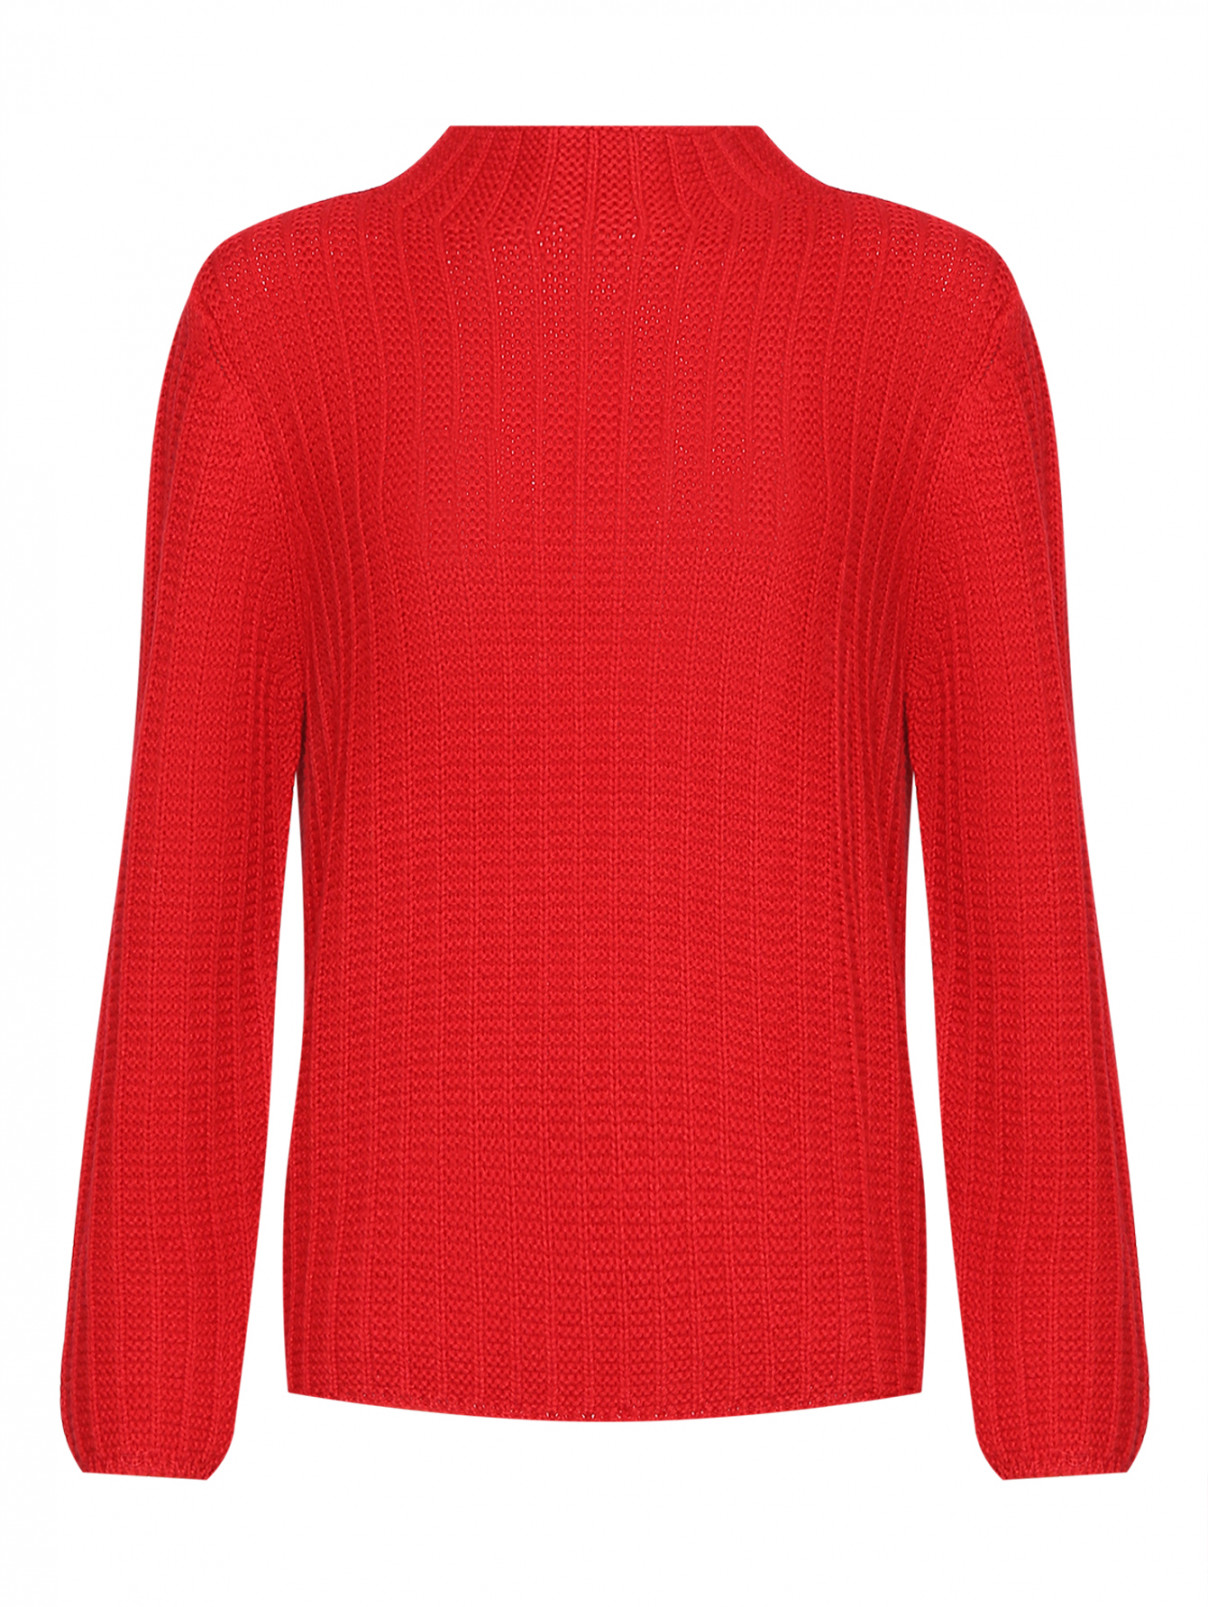 Базовый свитер из шерсти мелкой вязки Luisa Spagnoli  –  Общий вид  – Цвет:  Красный